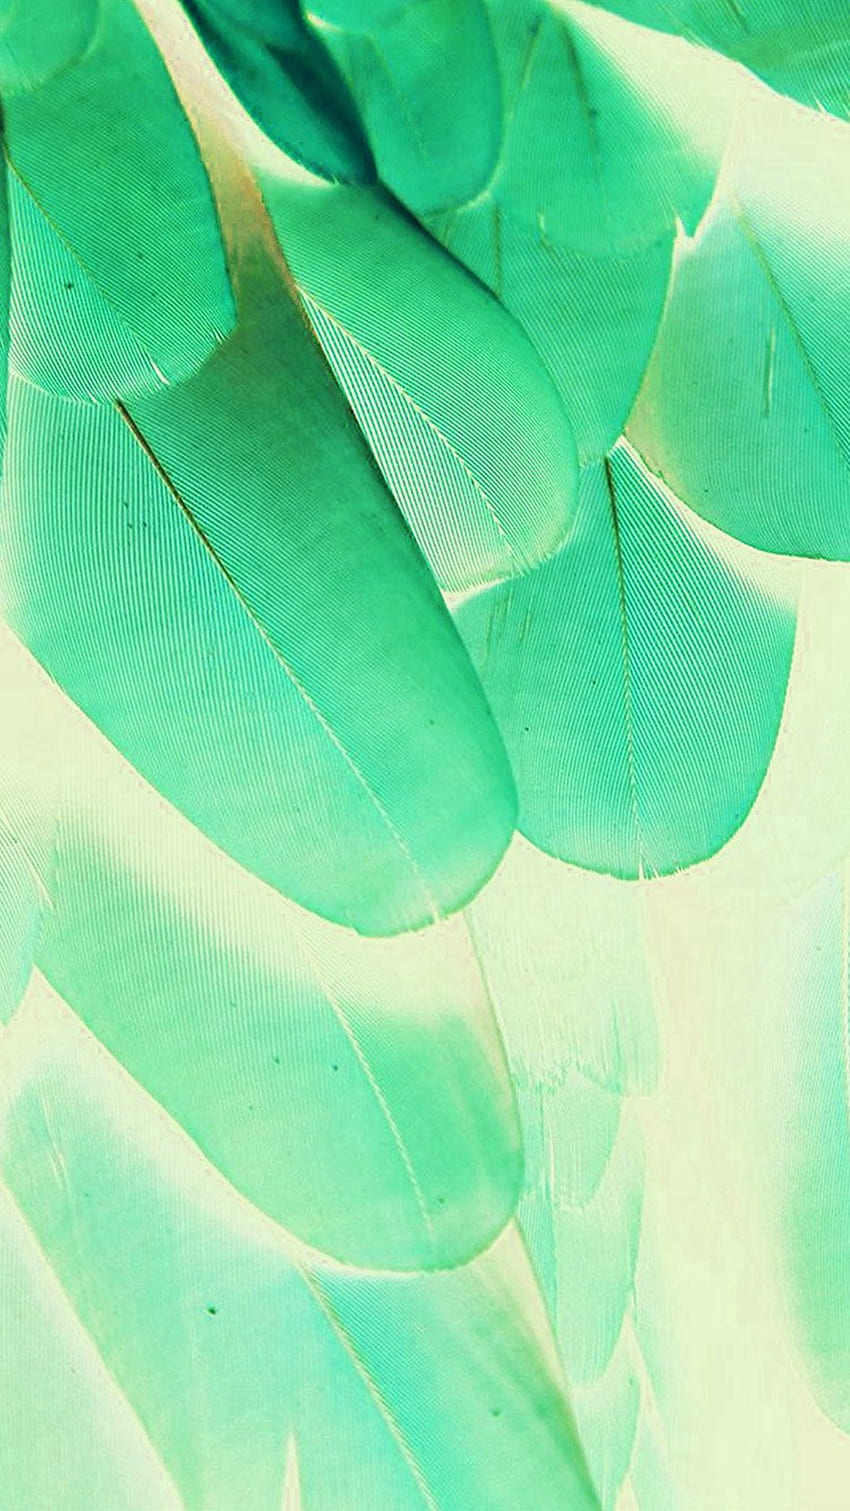 Feder-Grün-Blau-Natur-Beschaffenheits-Tier-Muster iPhone 6 HD-Handy-Hintergrundbild